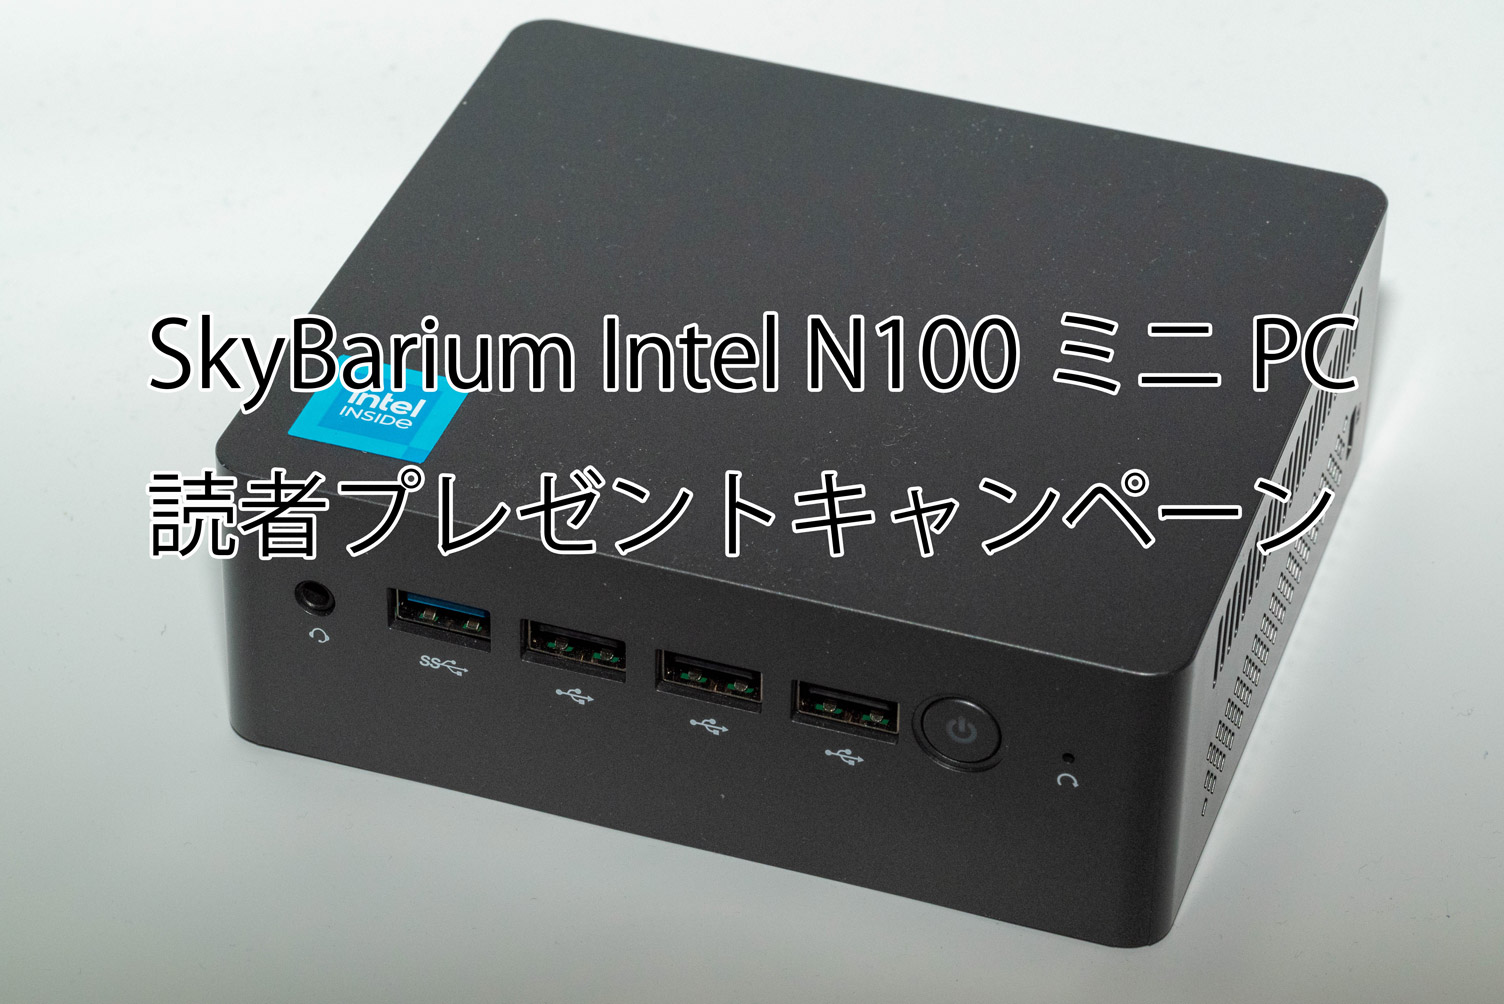 【応募期間終了】「SkyBarium Intel N100ミニPC」抽選プレゼントキャンペーン